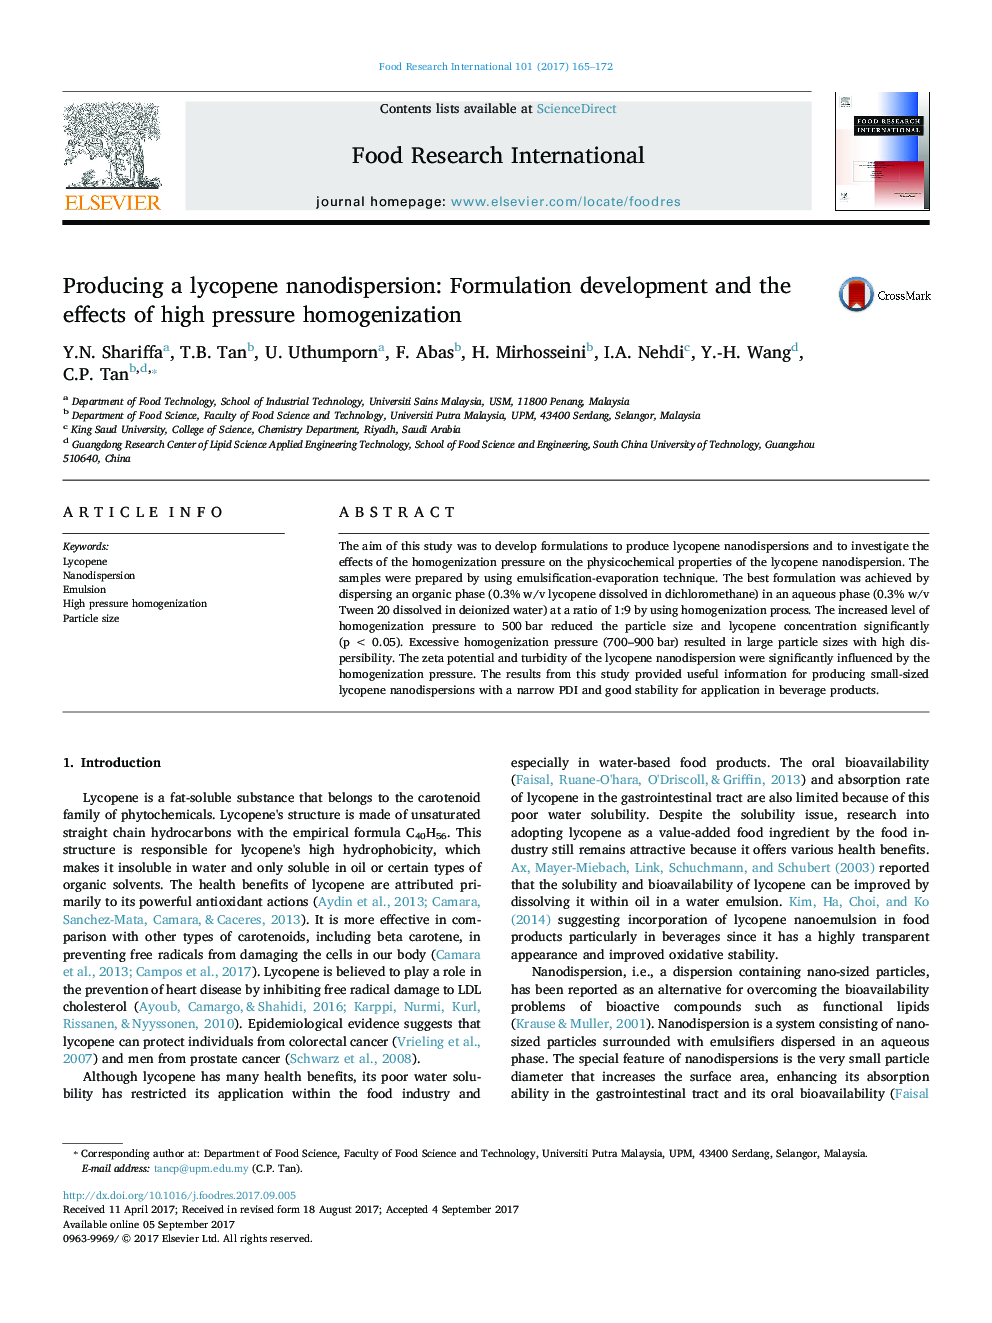 تولید نانودیزاسیون لیکوپن: توسعه فرمولاسیون و اثرات همگن شدن فشار بالا 